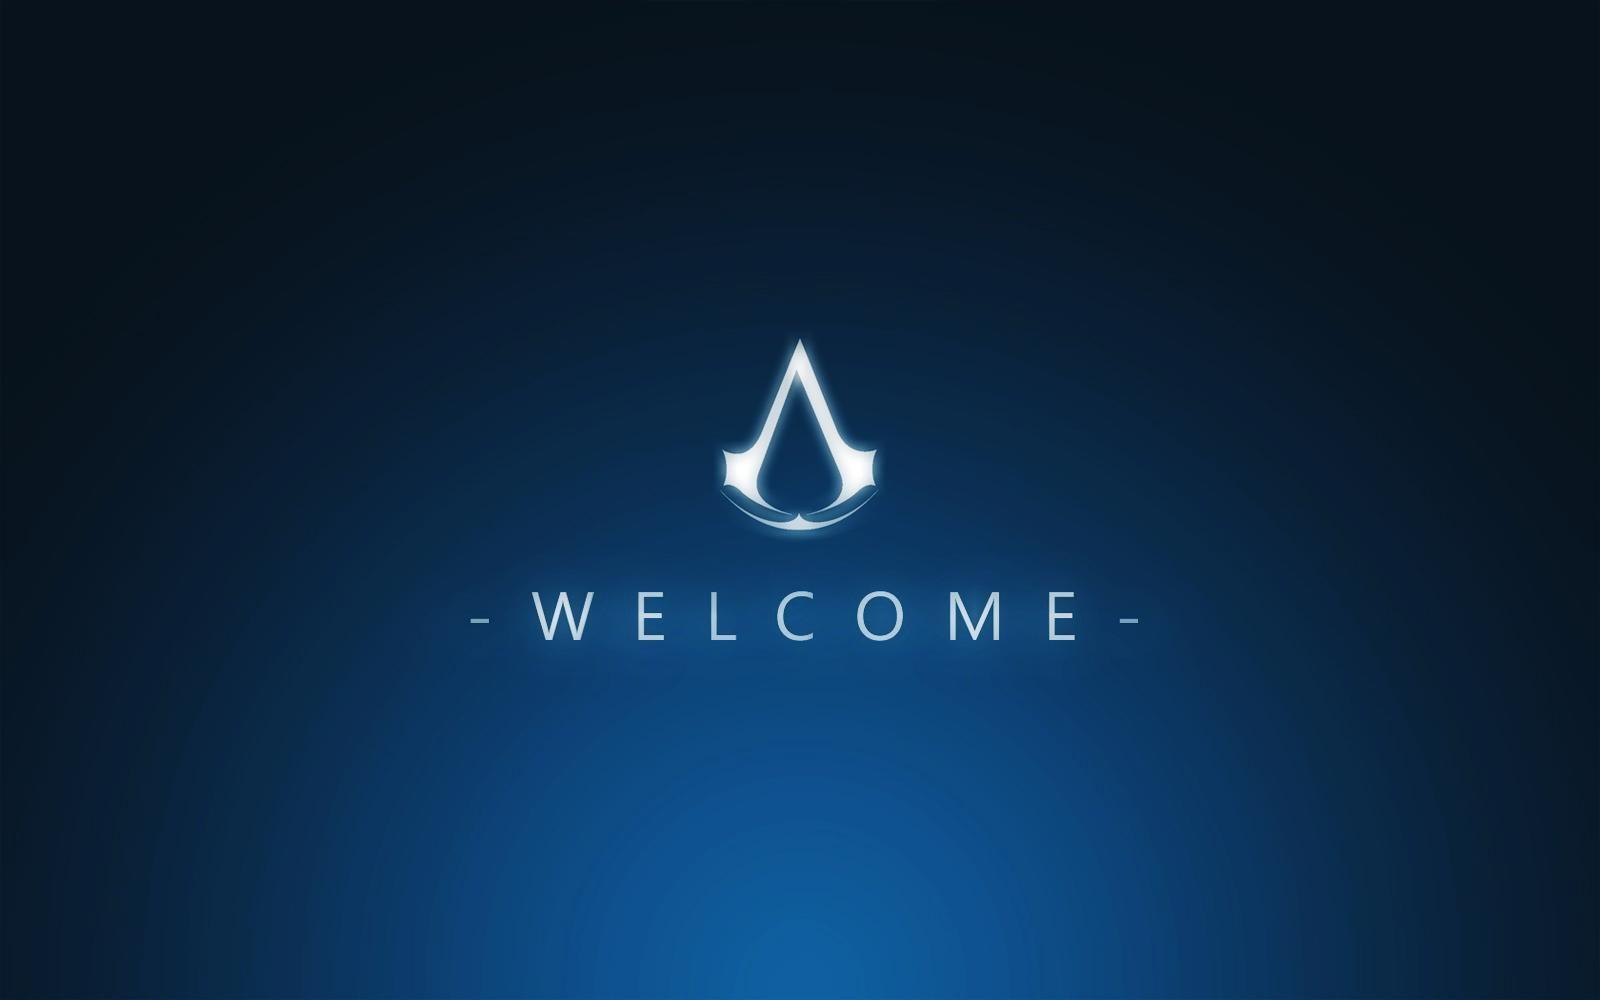 Assassin's Creed Animus HD desktop wallpaper, Widescreen, High